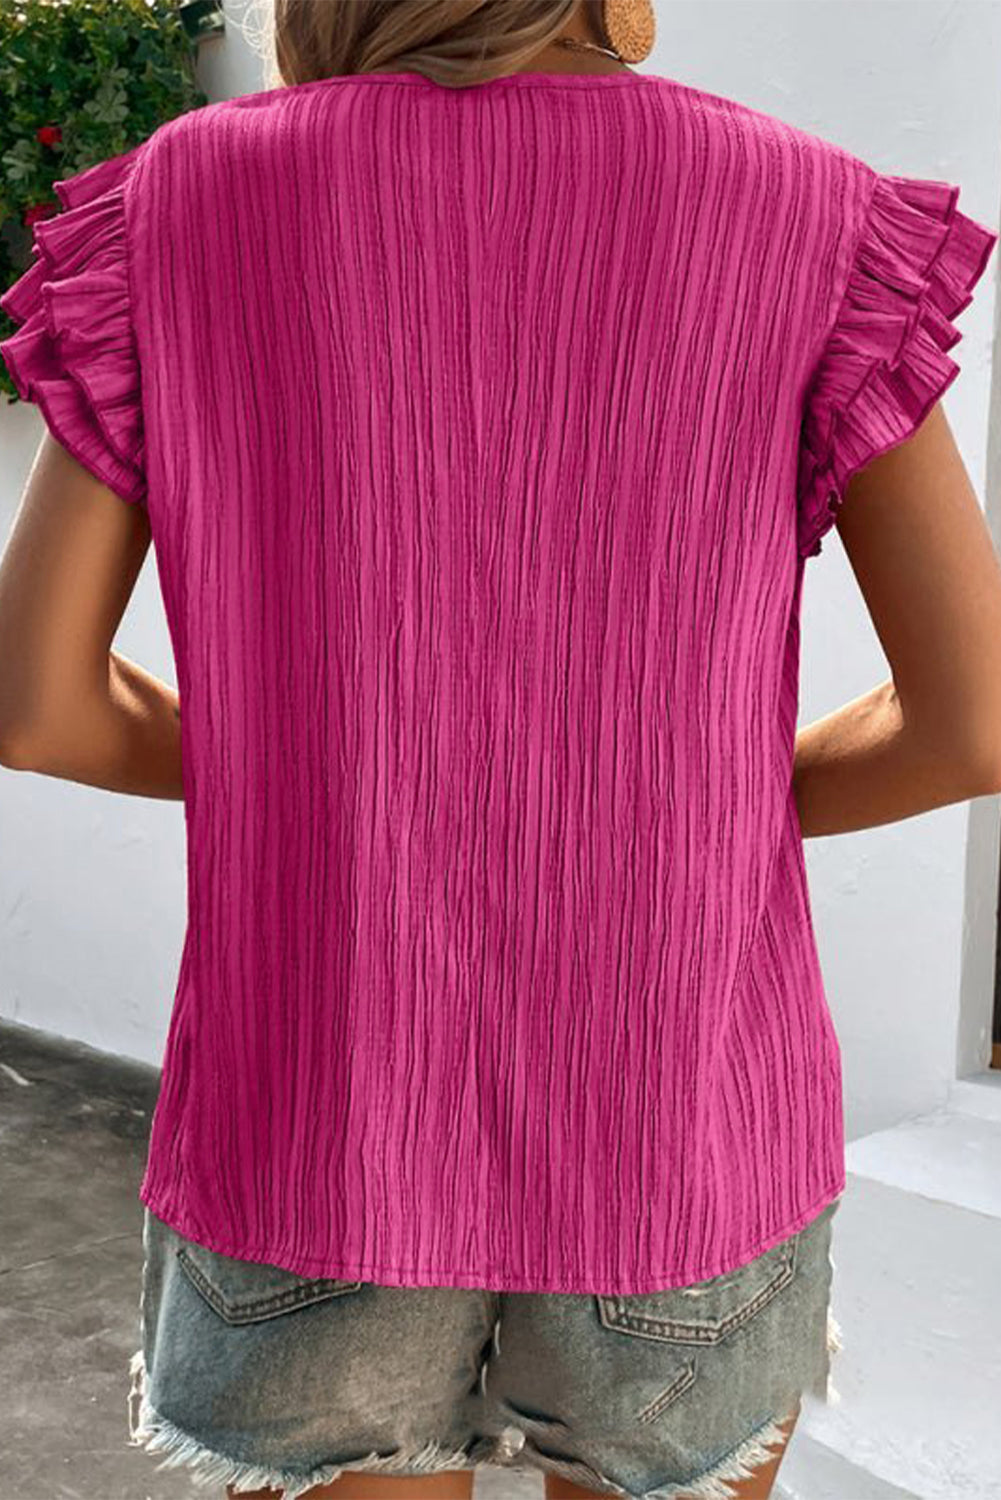 Rožnato rdeča teksturirana majica z naborkanimi rokavi z V izrezom